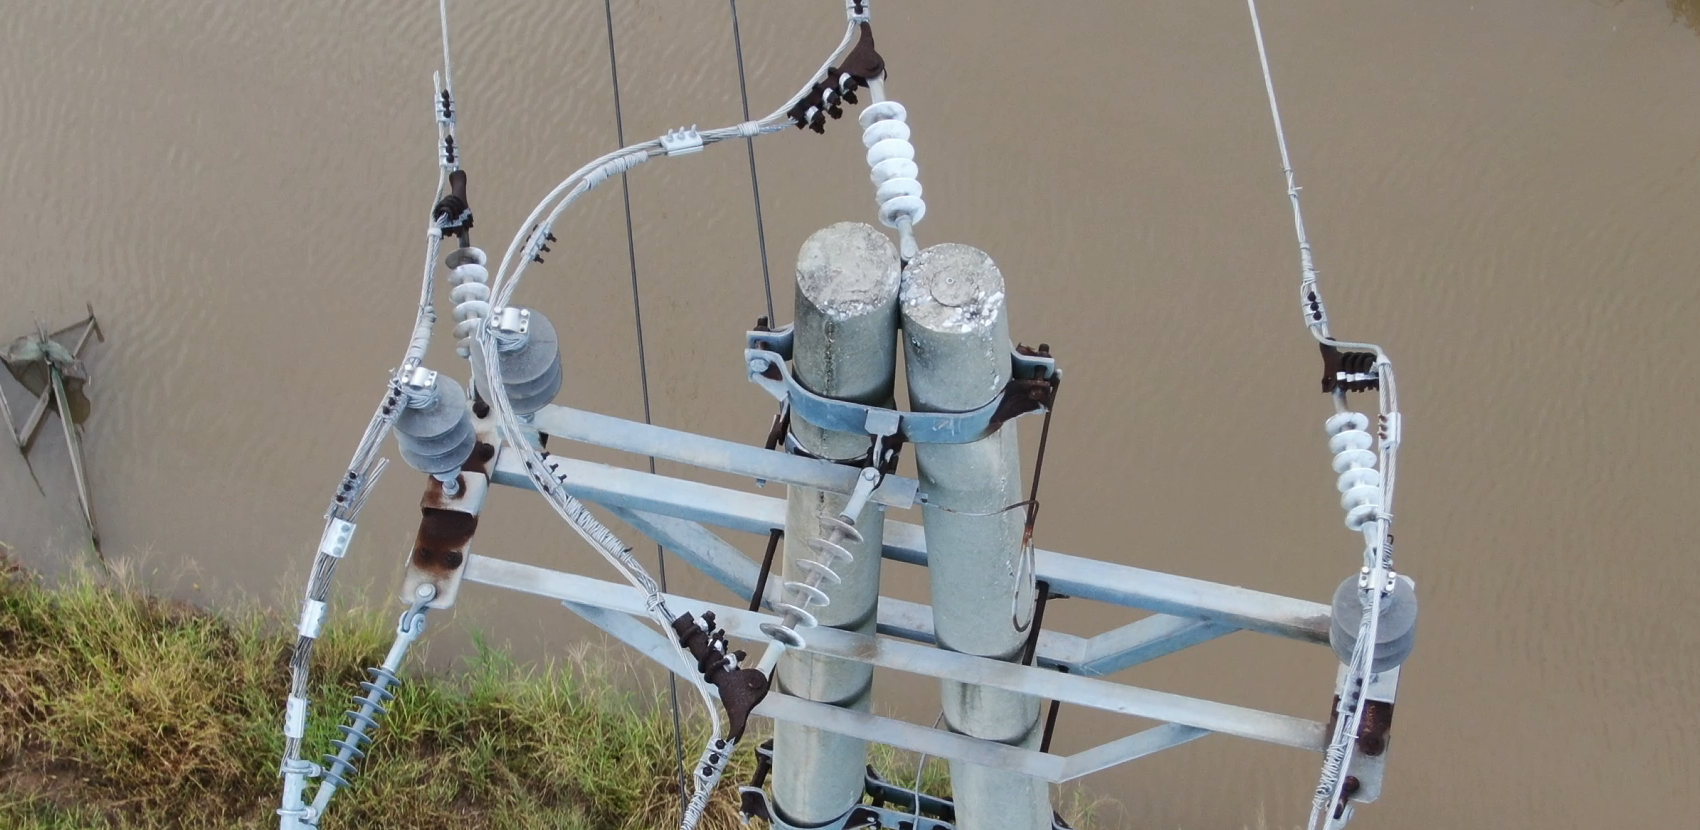 4 - Kinh nghiệm sử dụng Flycam để kiểm tra sự cố hệ thống lưới điện